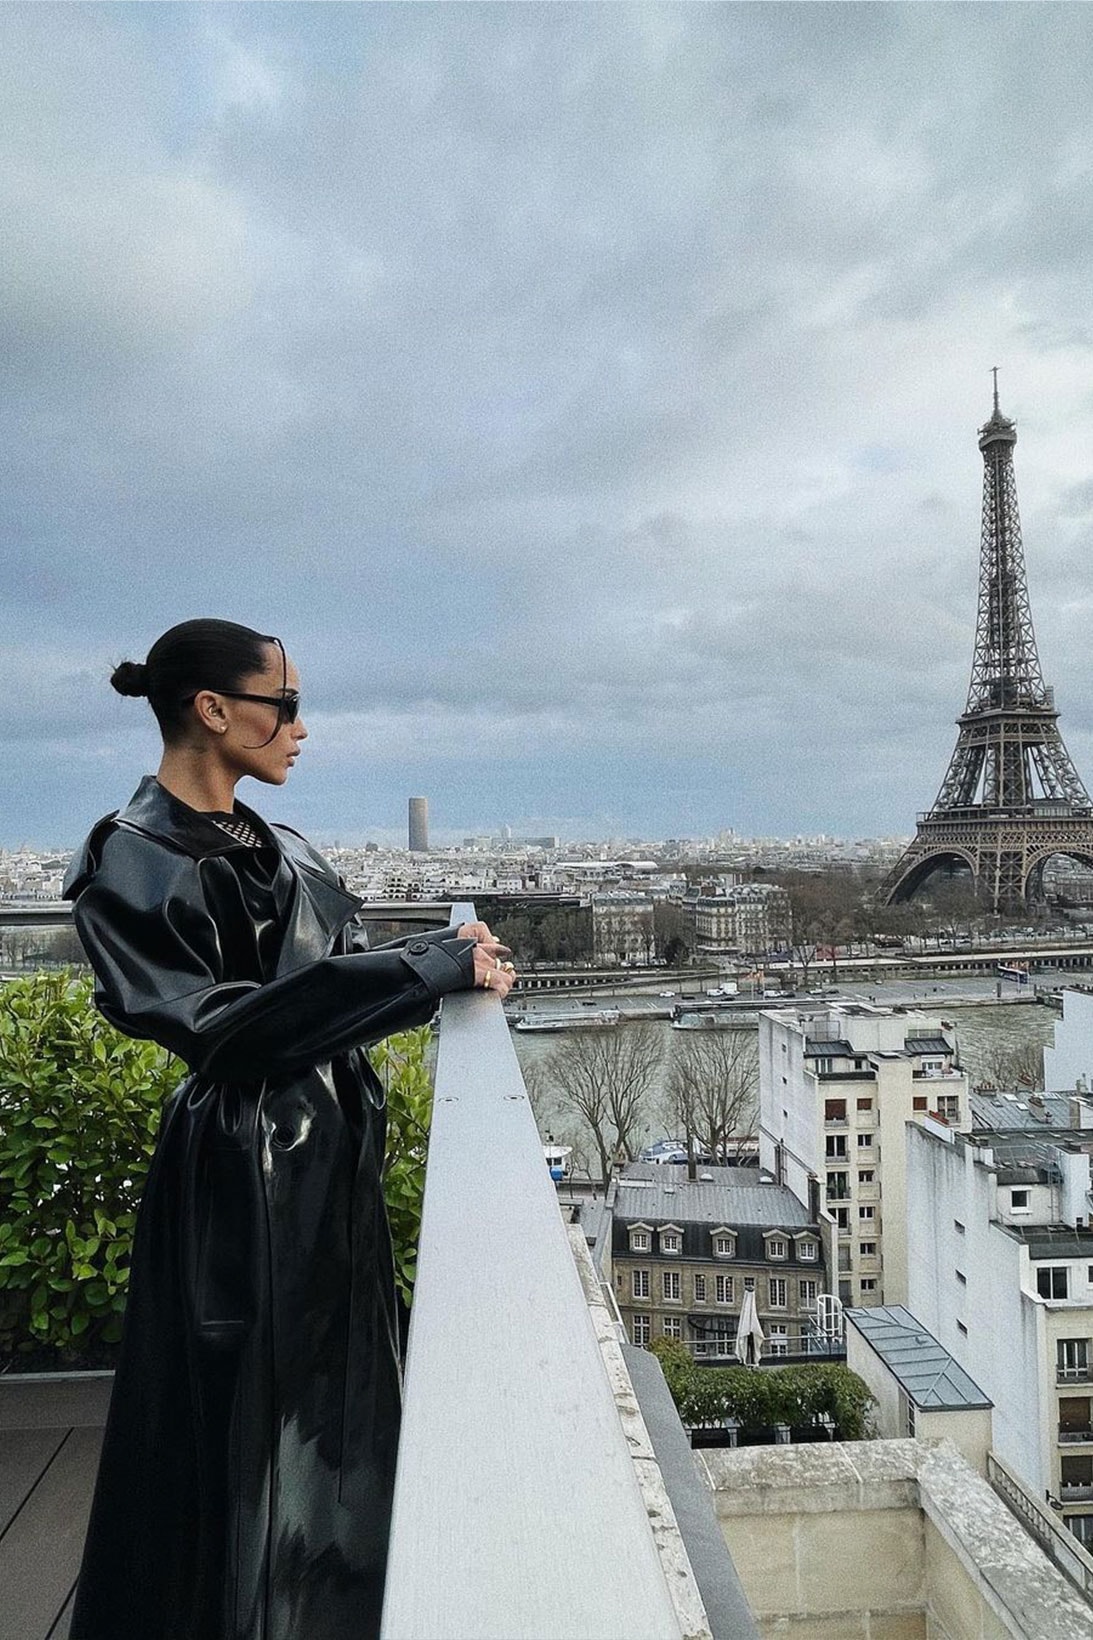 Zoë Kravitz Saint Laurent Batman Paris Outfit Black Coat Anthony Vaccarello Info